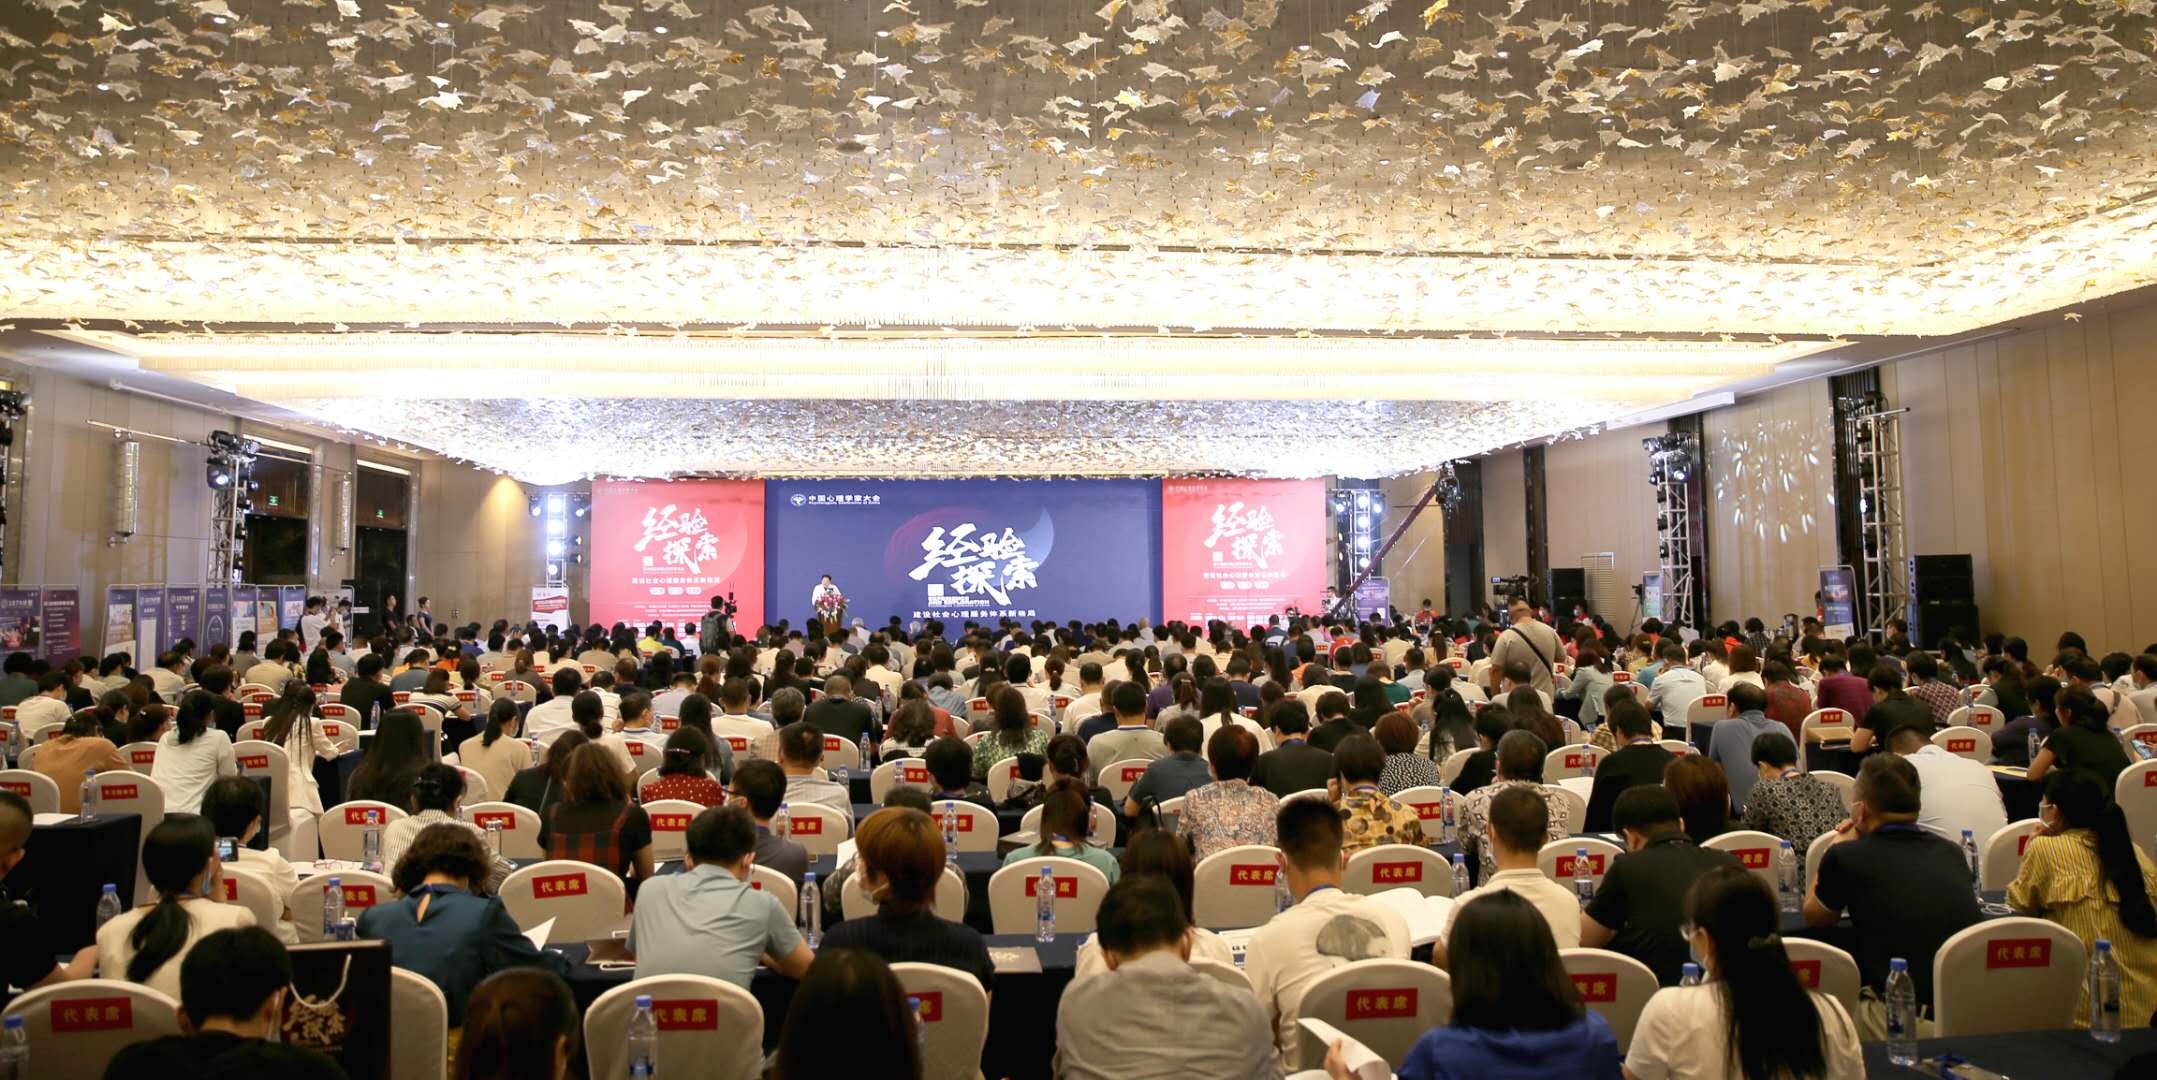 第十四届中国心理学家大会在驻马店隆重开幕-中国商网|中国商报社0